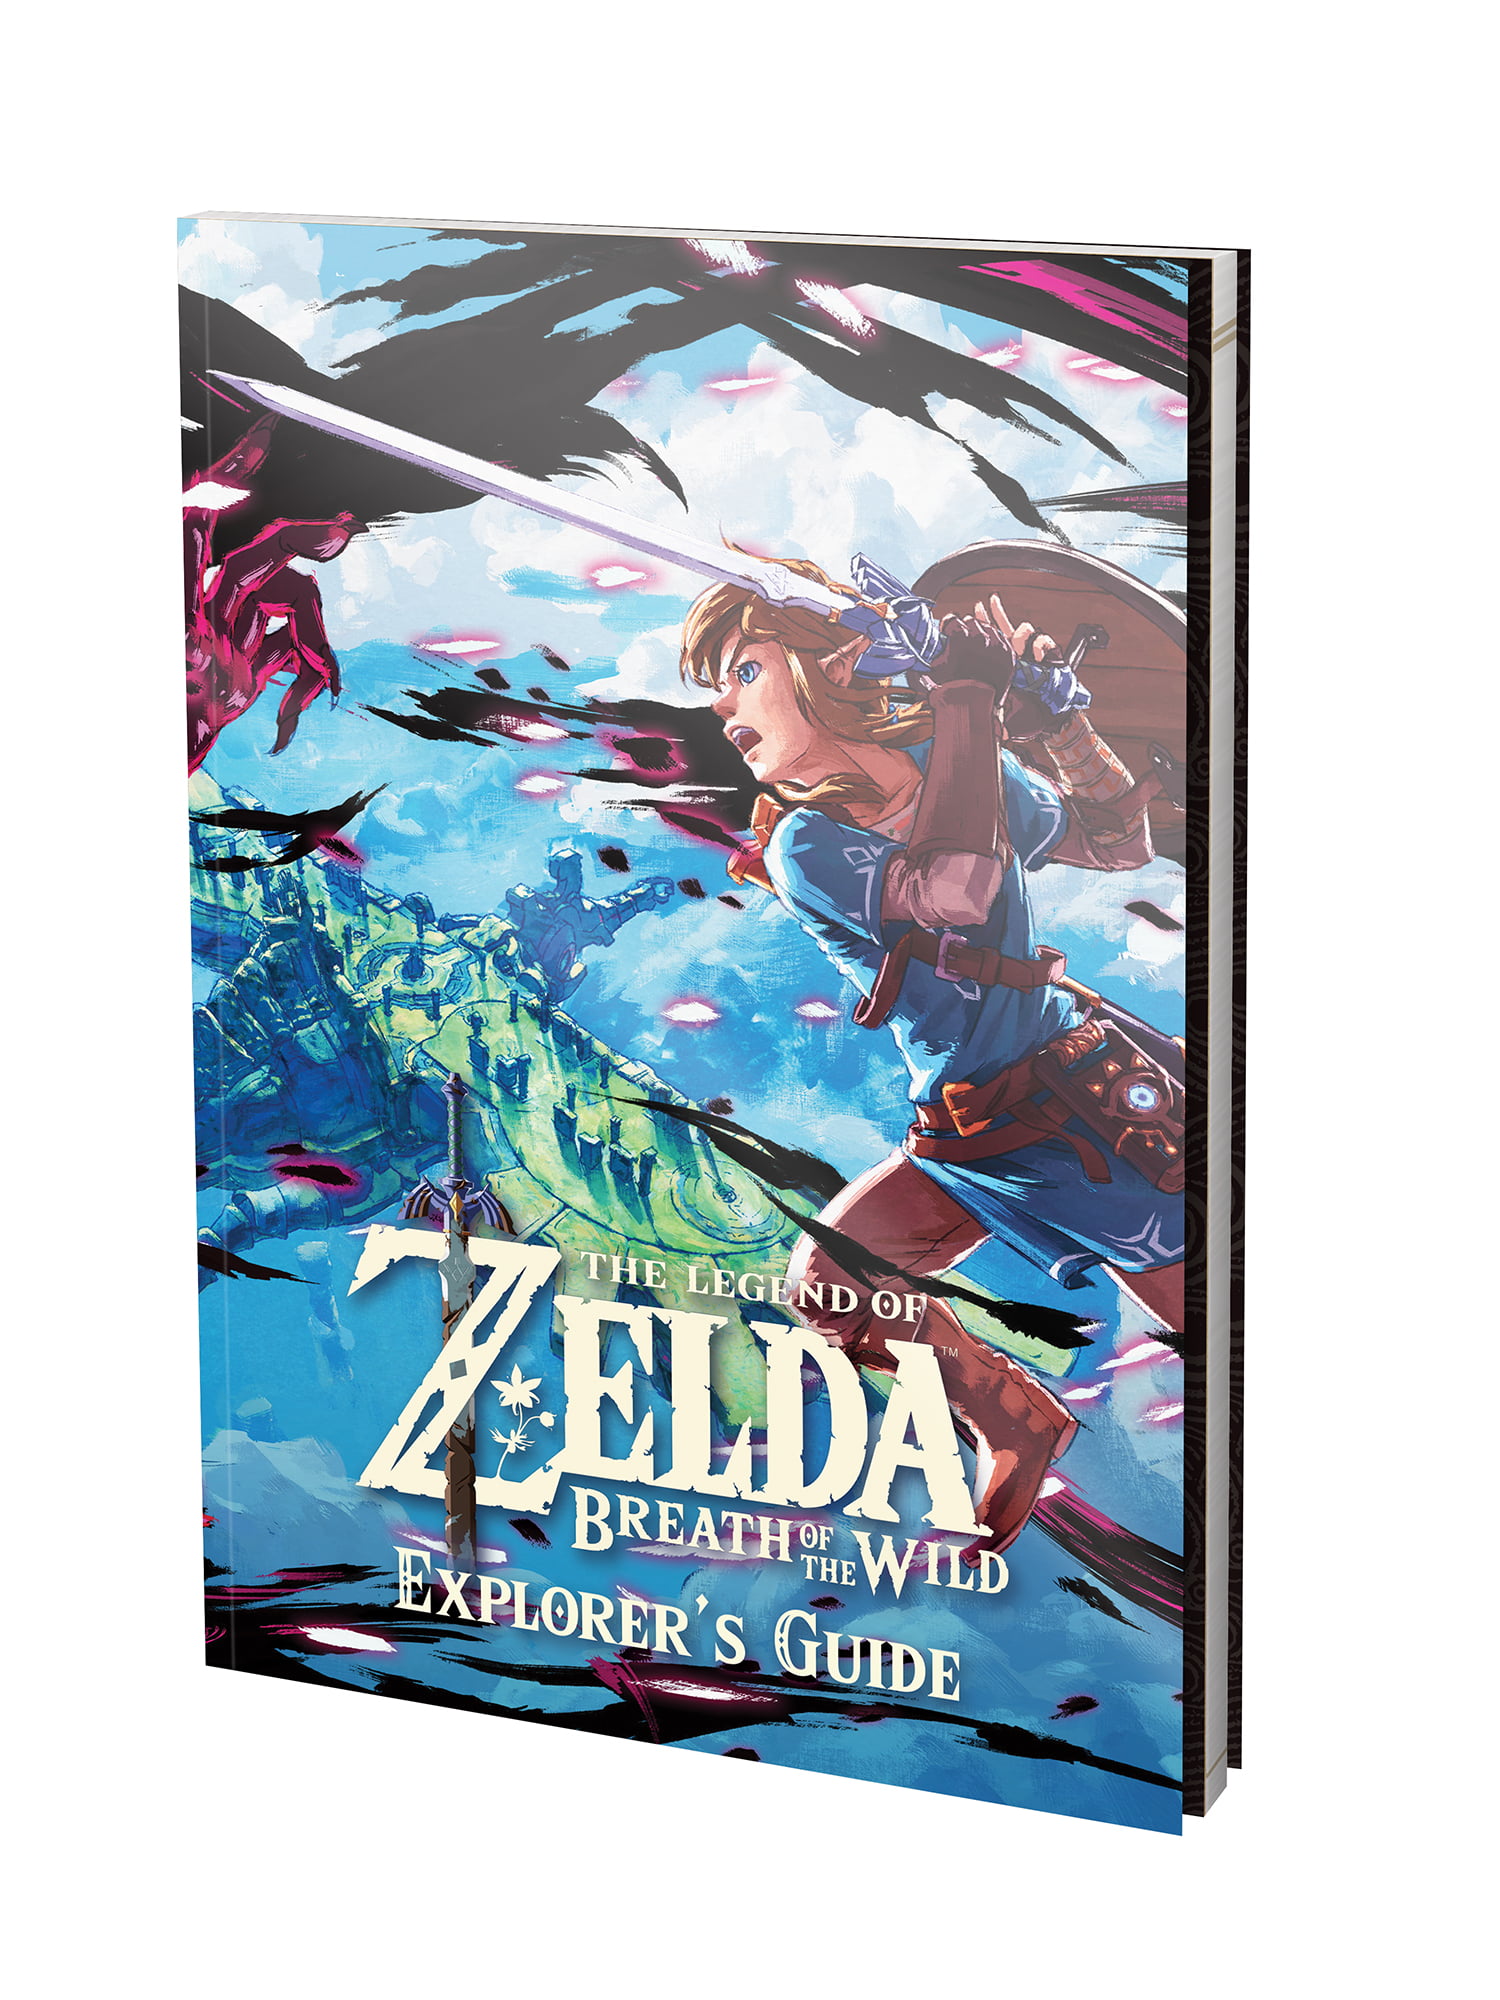 The Legend of Zelda: Breath of the Wild Standard Edition Nintendo Wii U  103421 - Best Buy